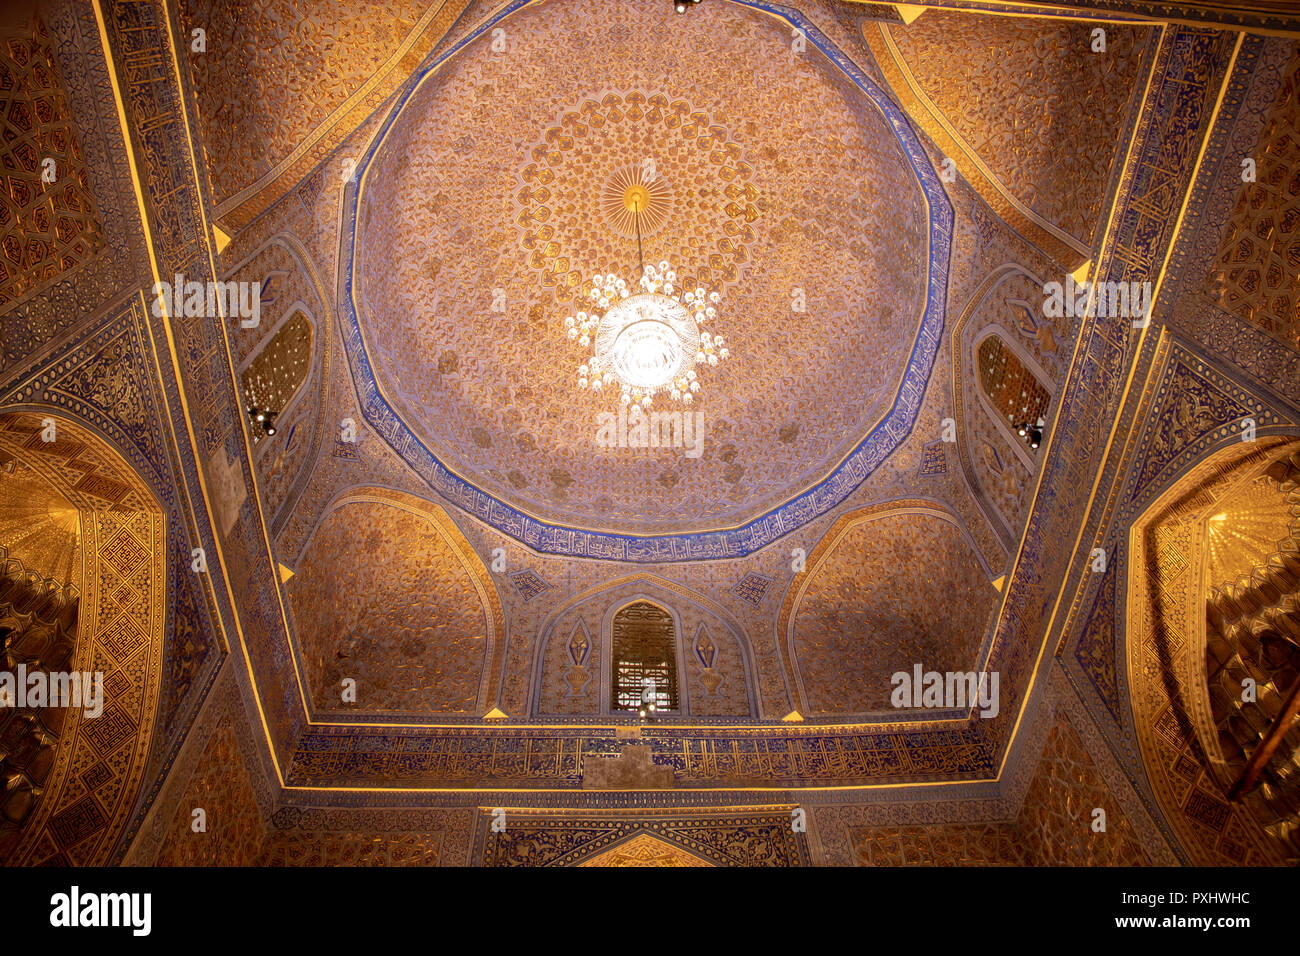 Die Farben Gold und Blau geschnitzten und bemalten Kuppel Innenraum an tamerlane oder Timur Grabstätte, Gur Emir, in Samarkand, Usbekistan. Stockfoto